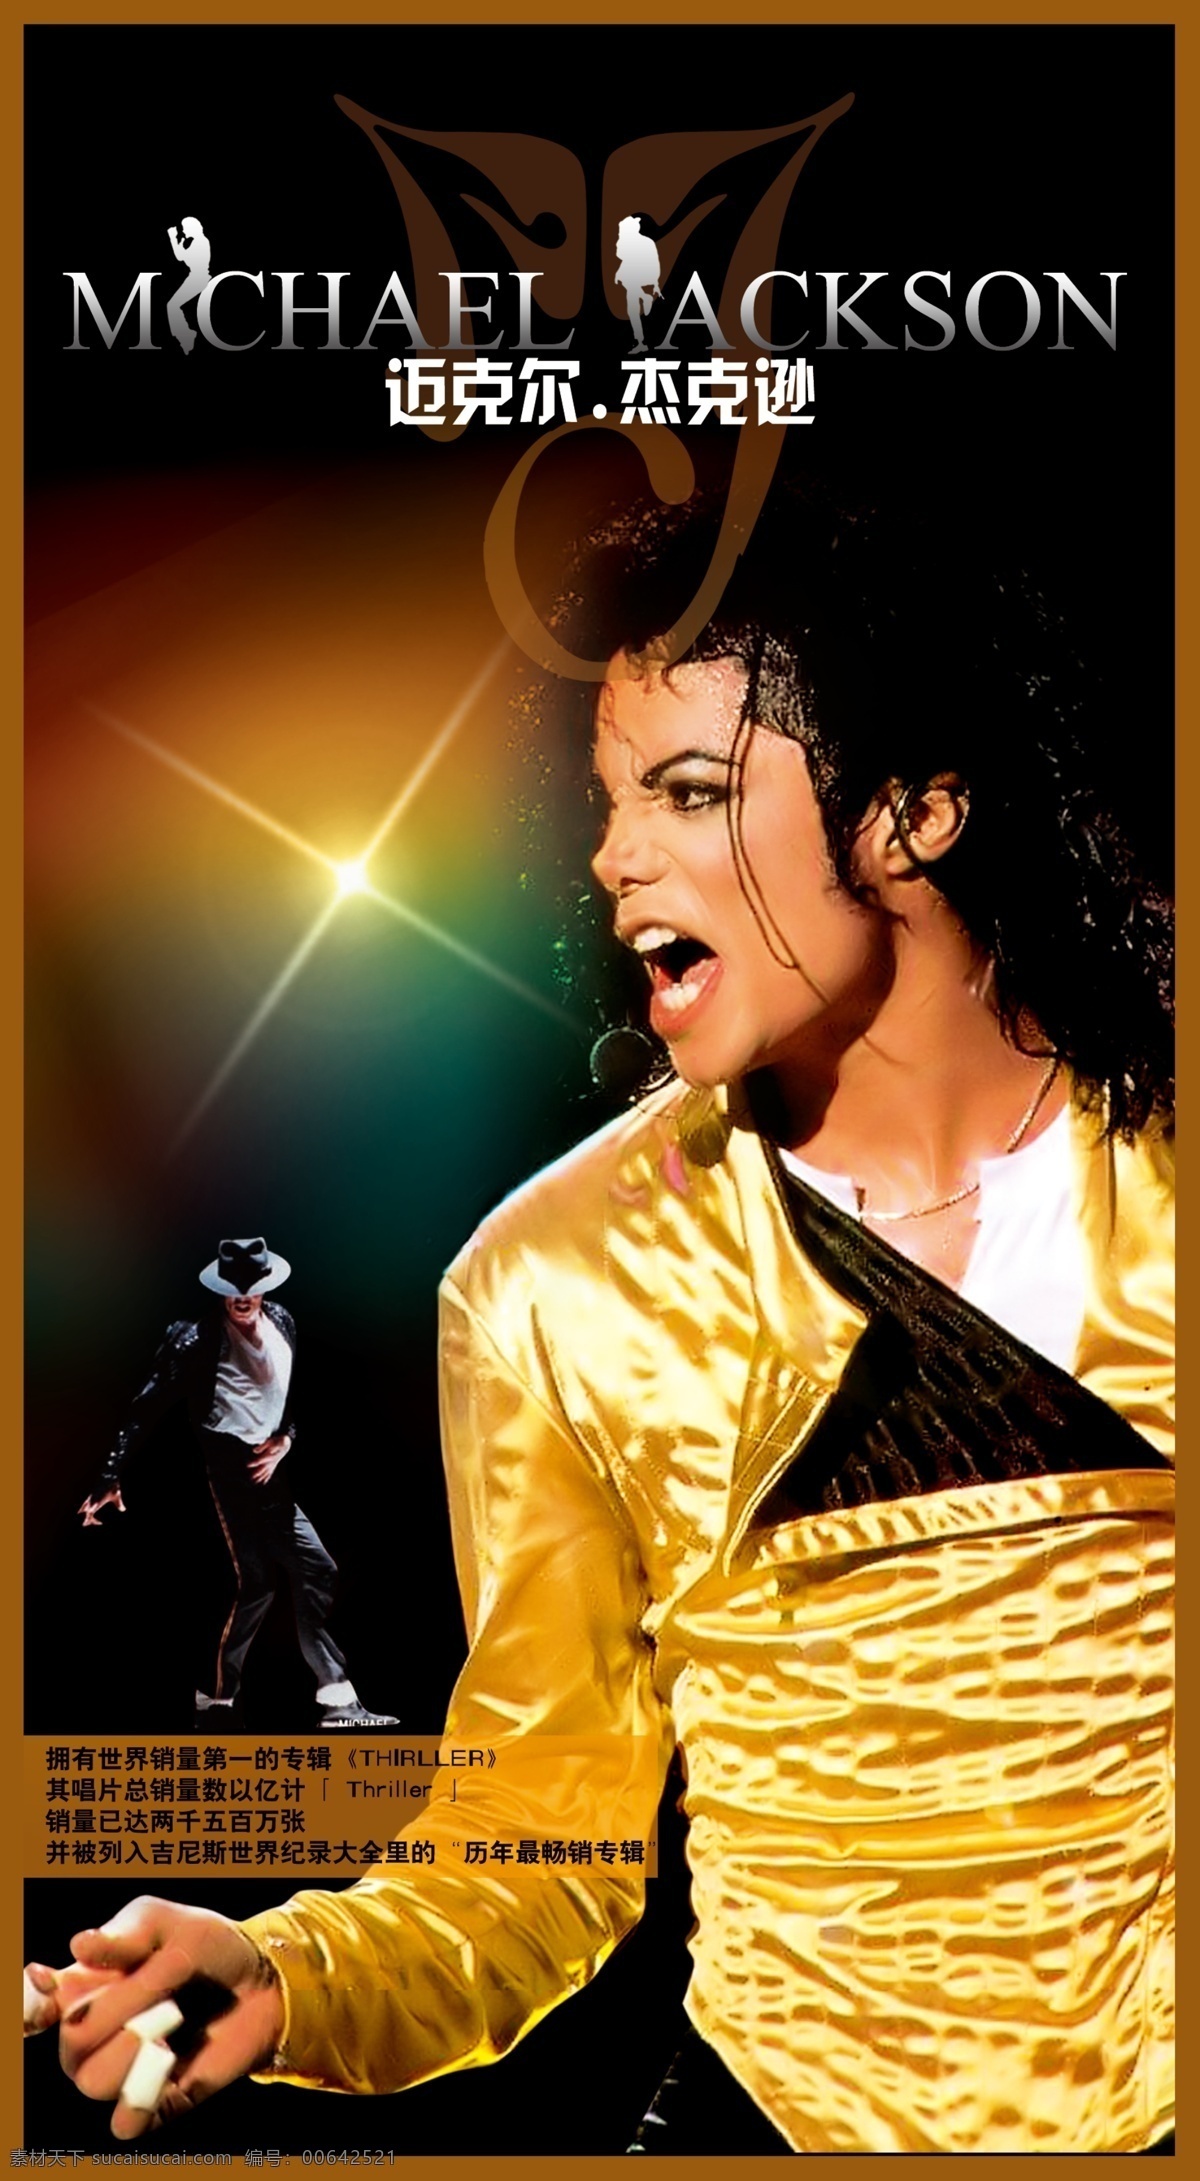 迈克尔 杰克逊 mchael ackson 演唱会 世界舞王 音乐 流行之王 电影海报 广告设计模板 源文件